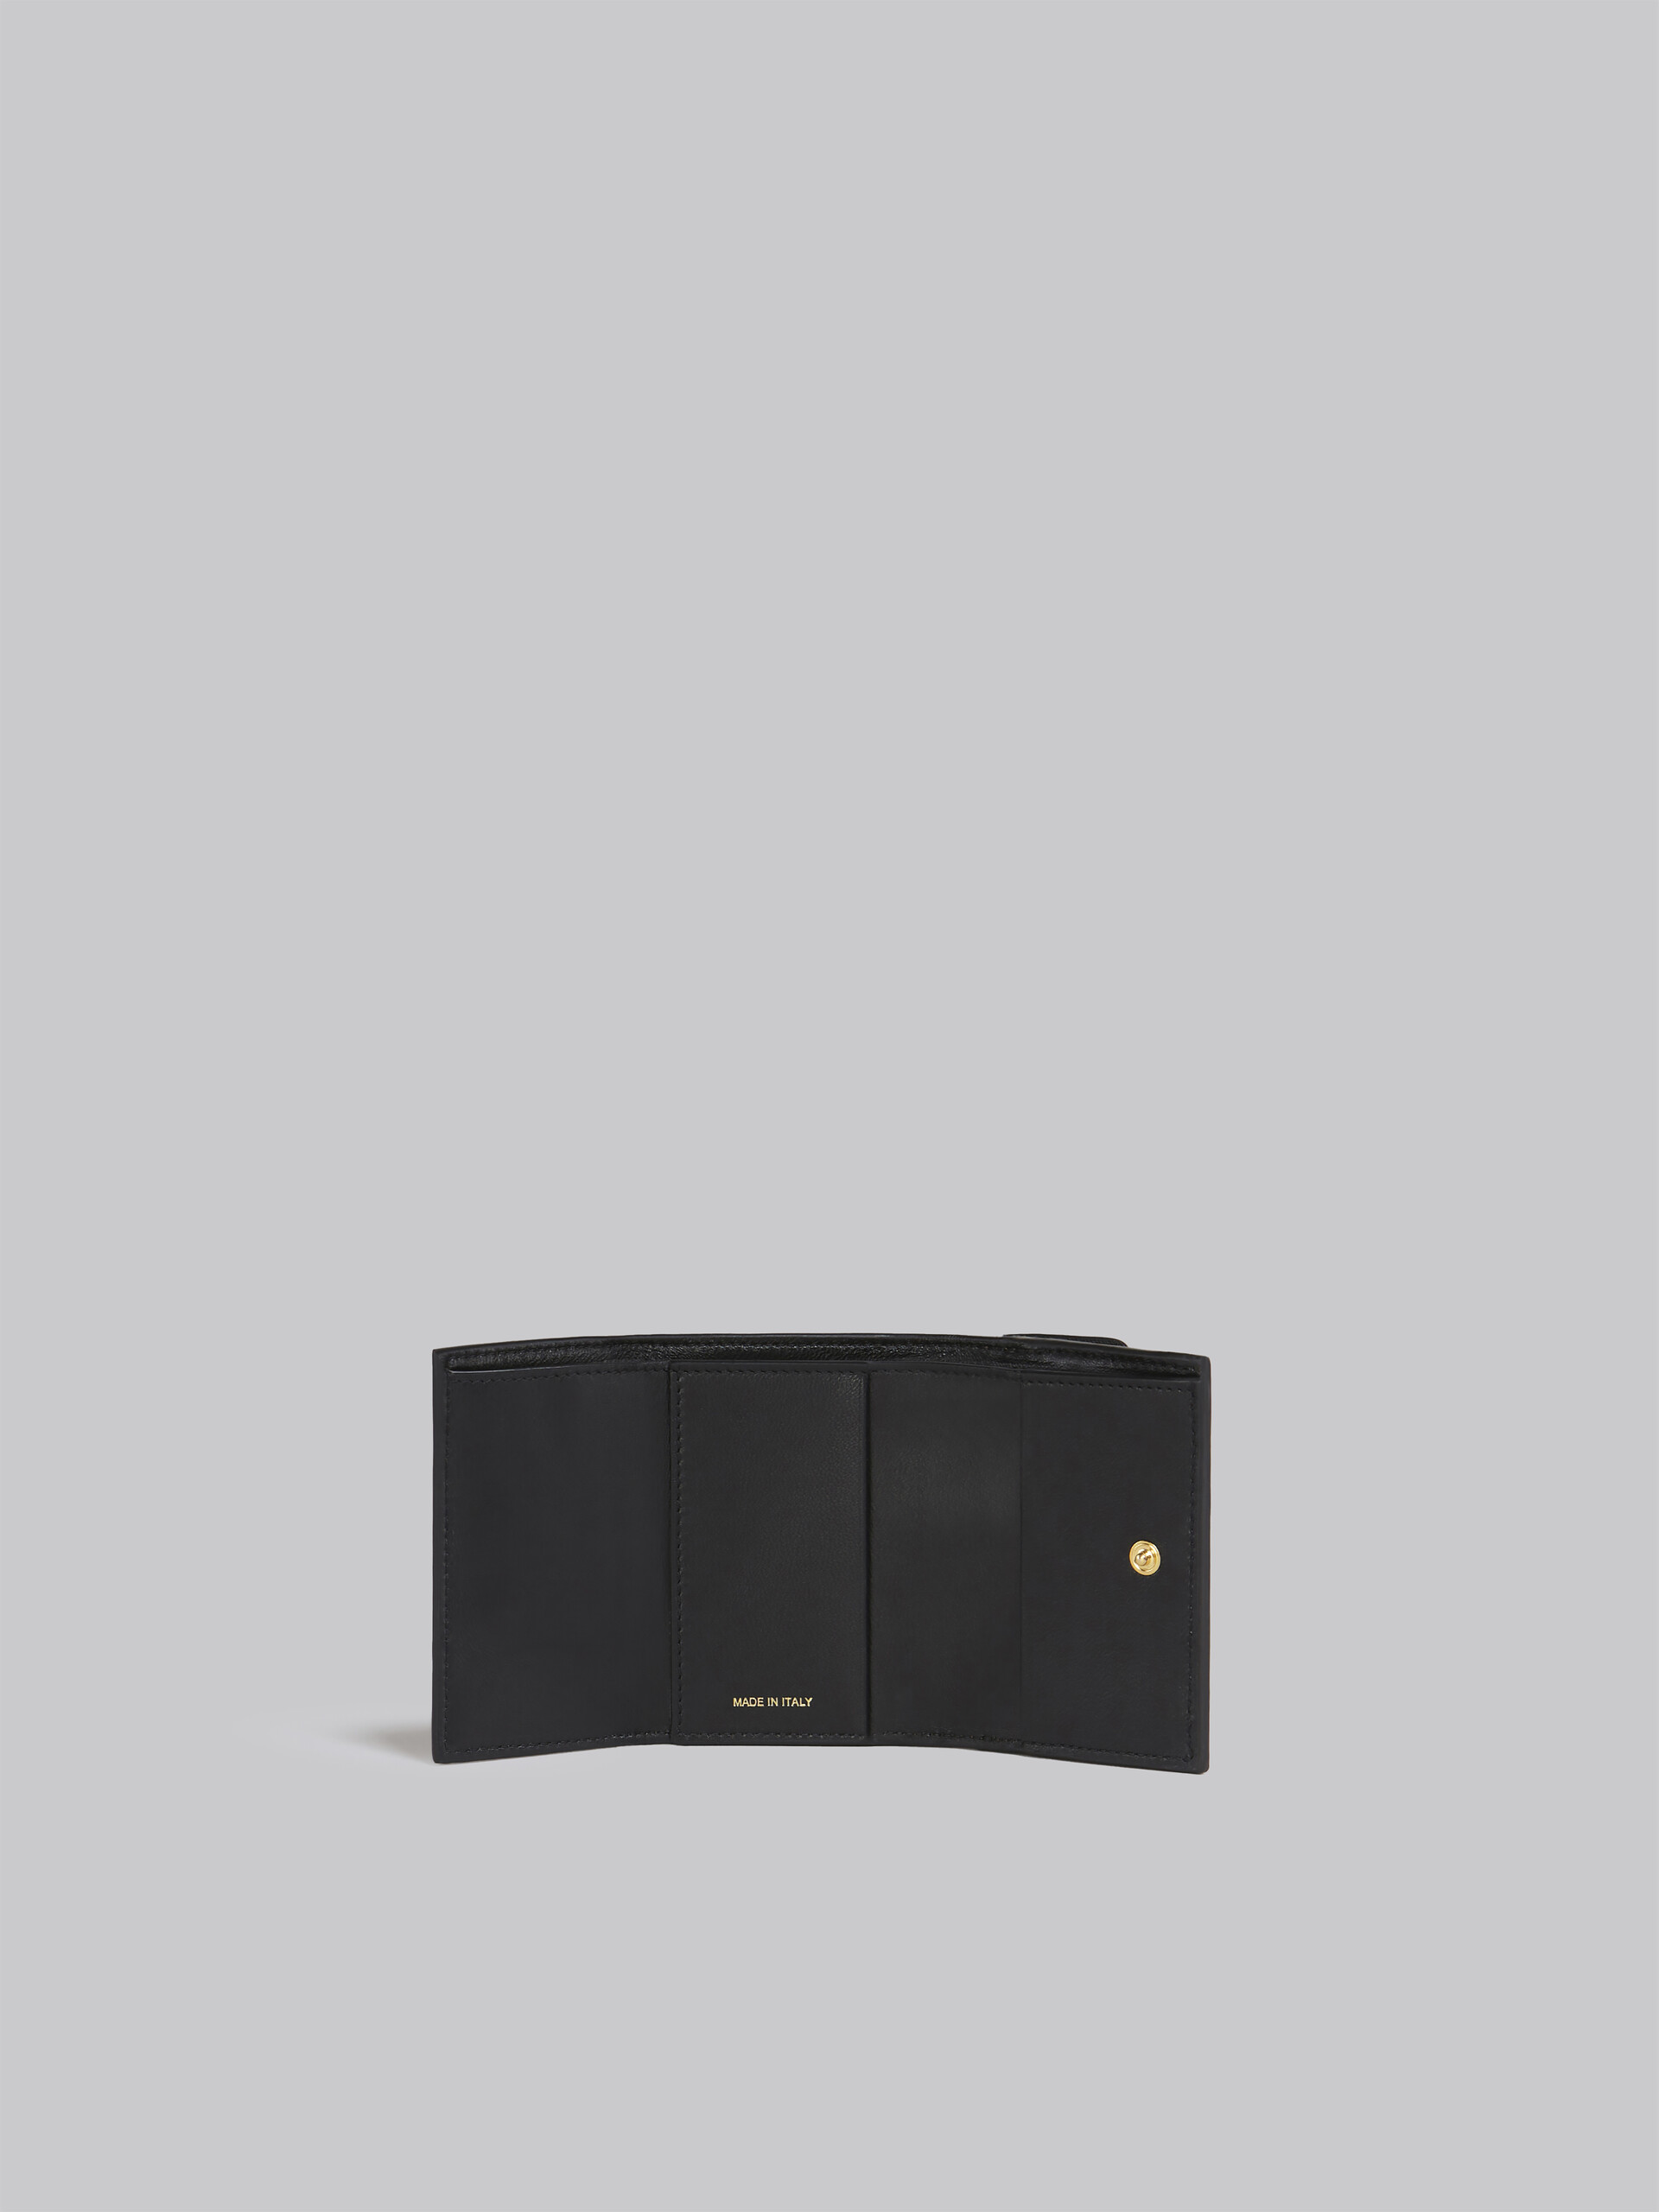 Portafoglio tri-fold in saffiano marrone lilla e nero - Portafogli - Image 2